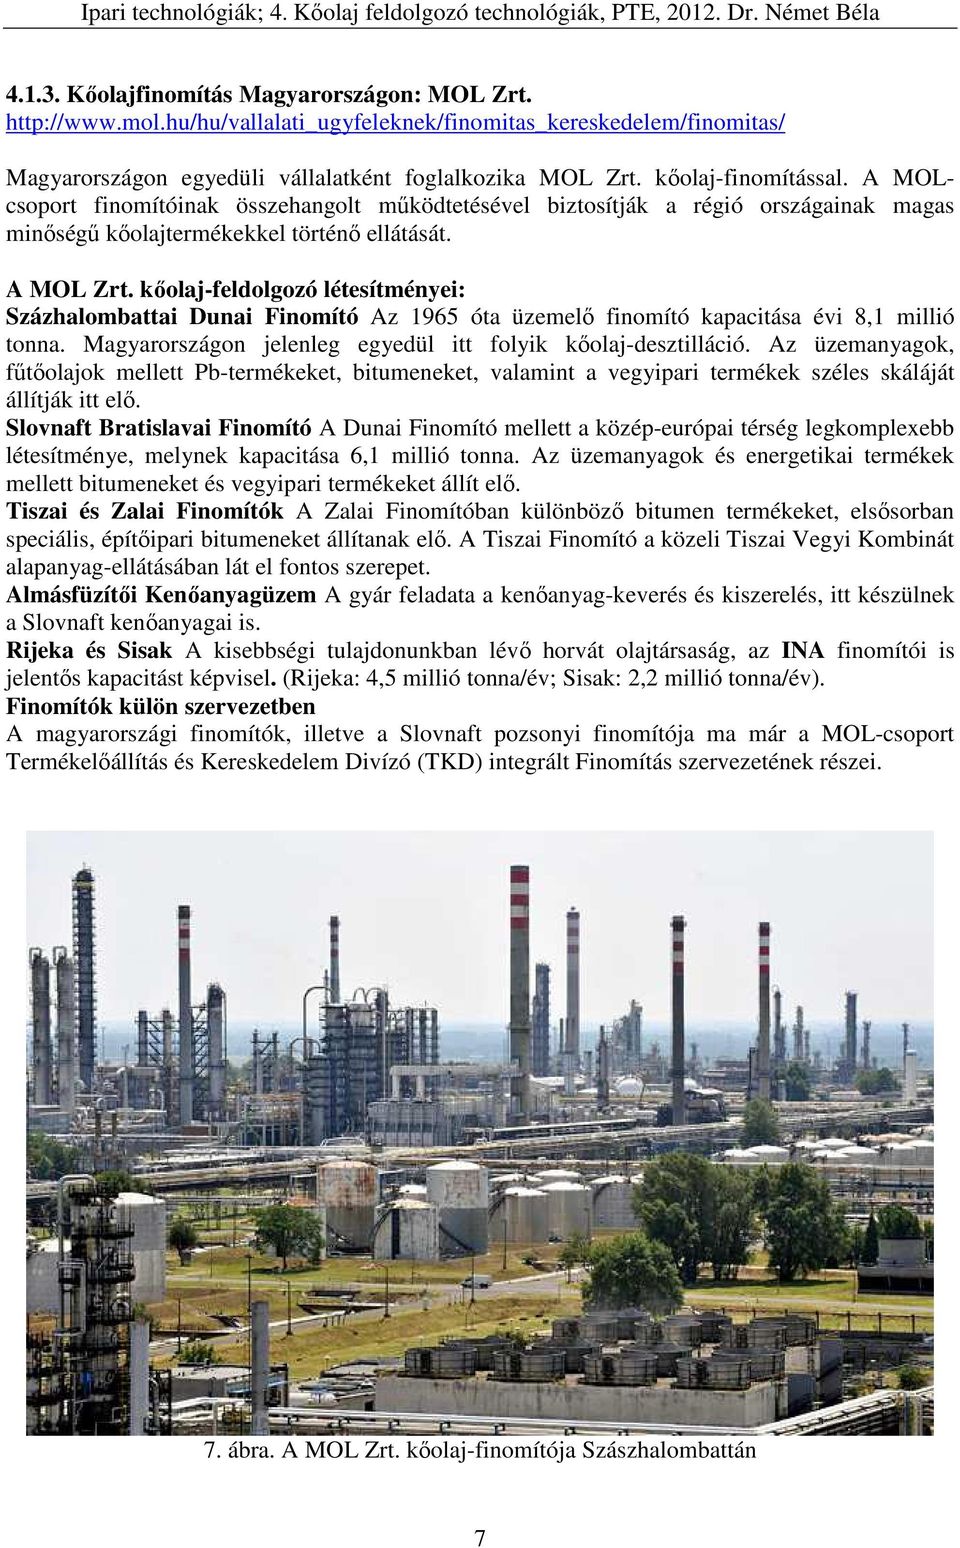 kőolaj-feldolgozó létesítményei: Százhalombattai Dunai Finomító Az 1965 óta üzemelő finomító kapacitása évi 8,1 millió tonna. Magyarországon jelenleg egyedül itt folyik kőolaj-desztilláció.